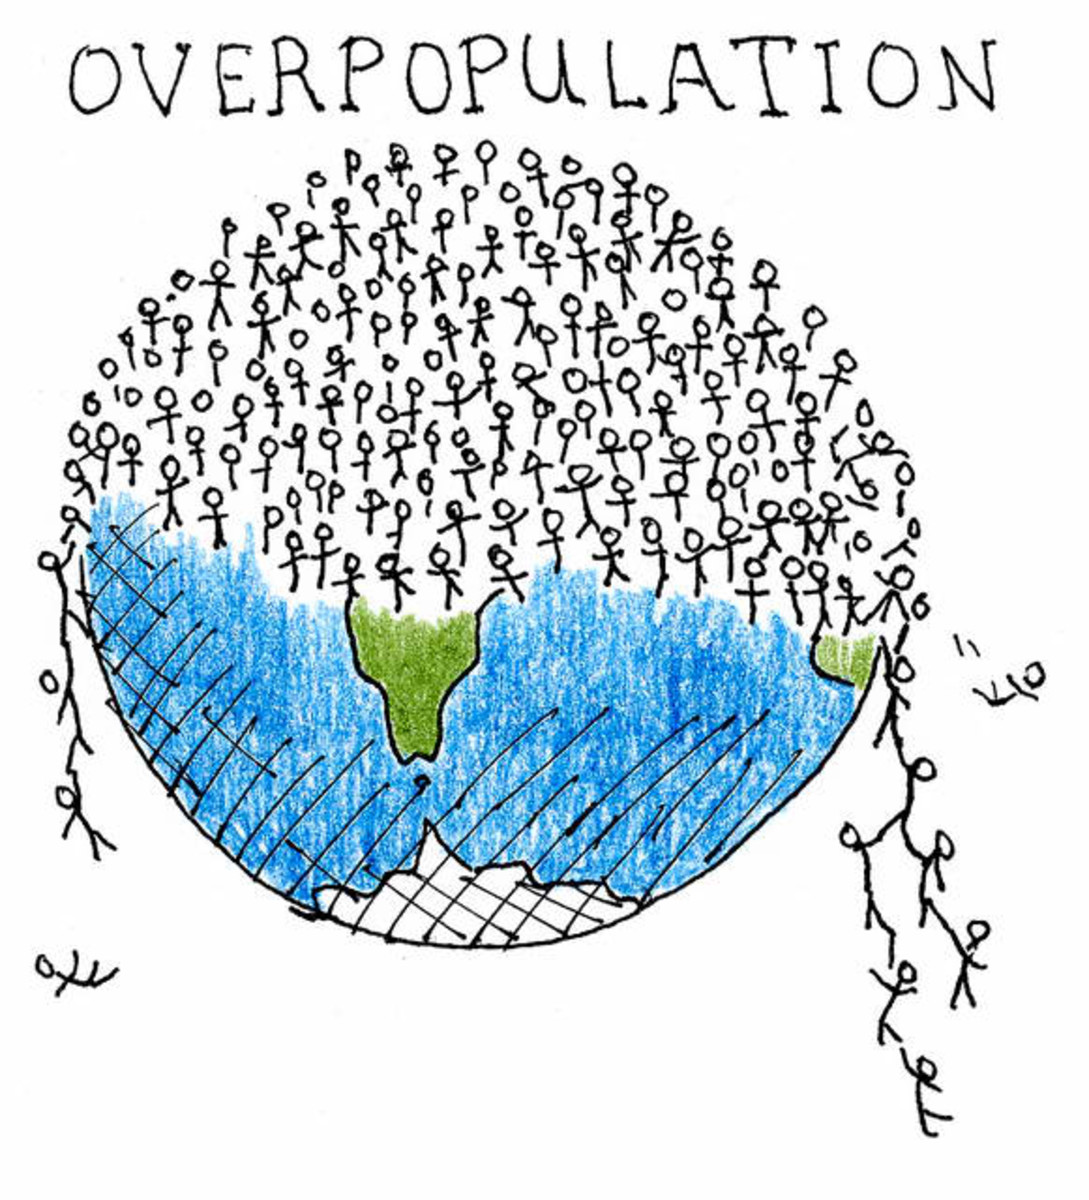 Bùng nổ dân số là gì? Nguyên nhân, hậu quả, thực trạng và giải pháp